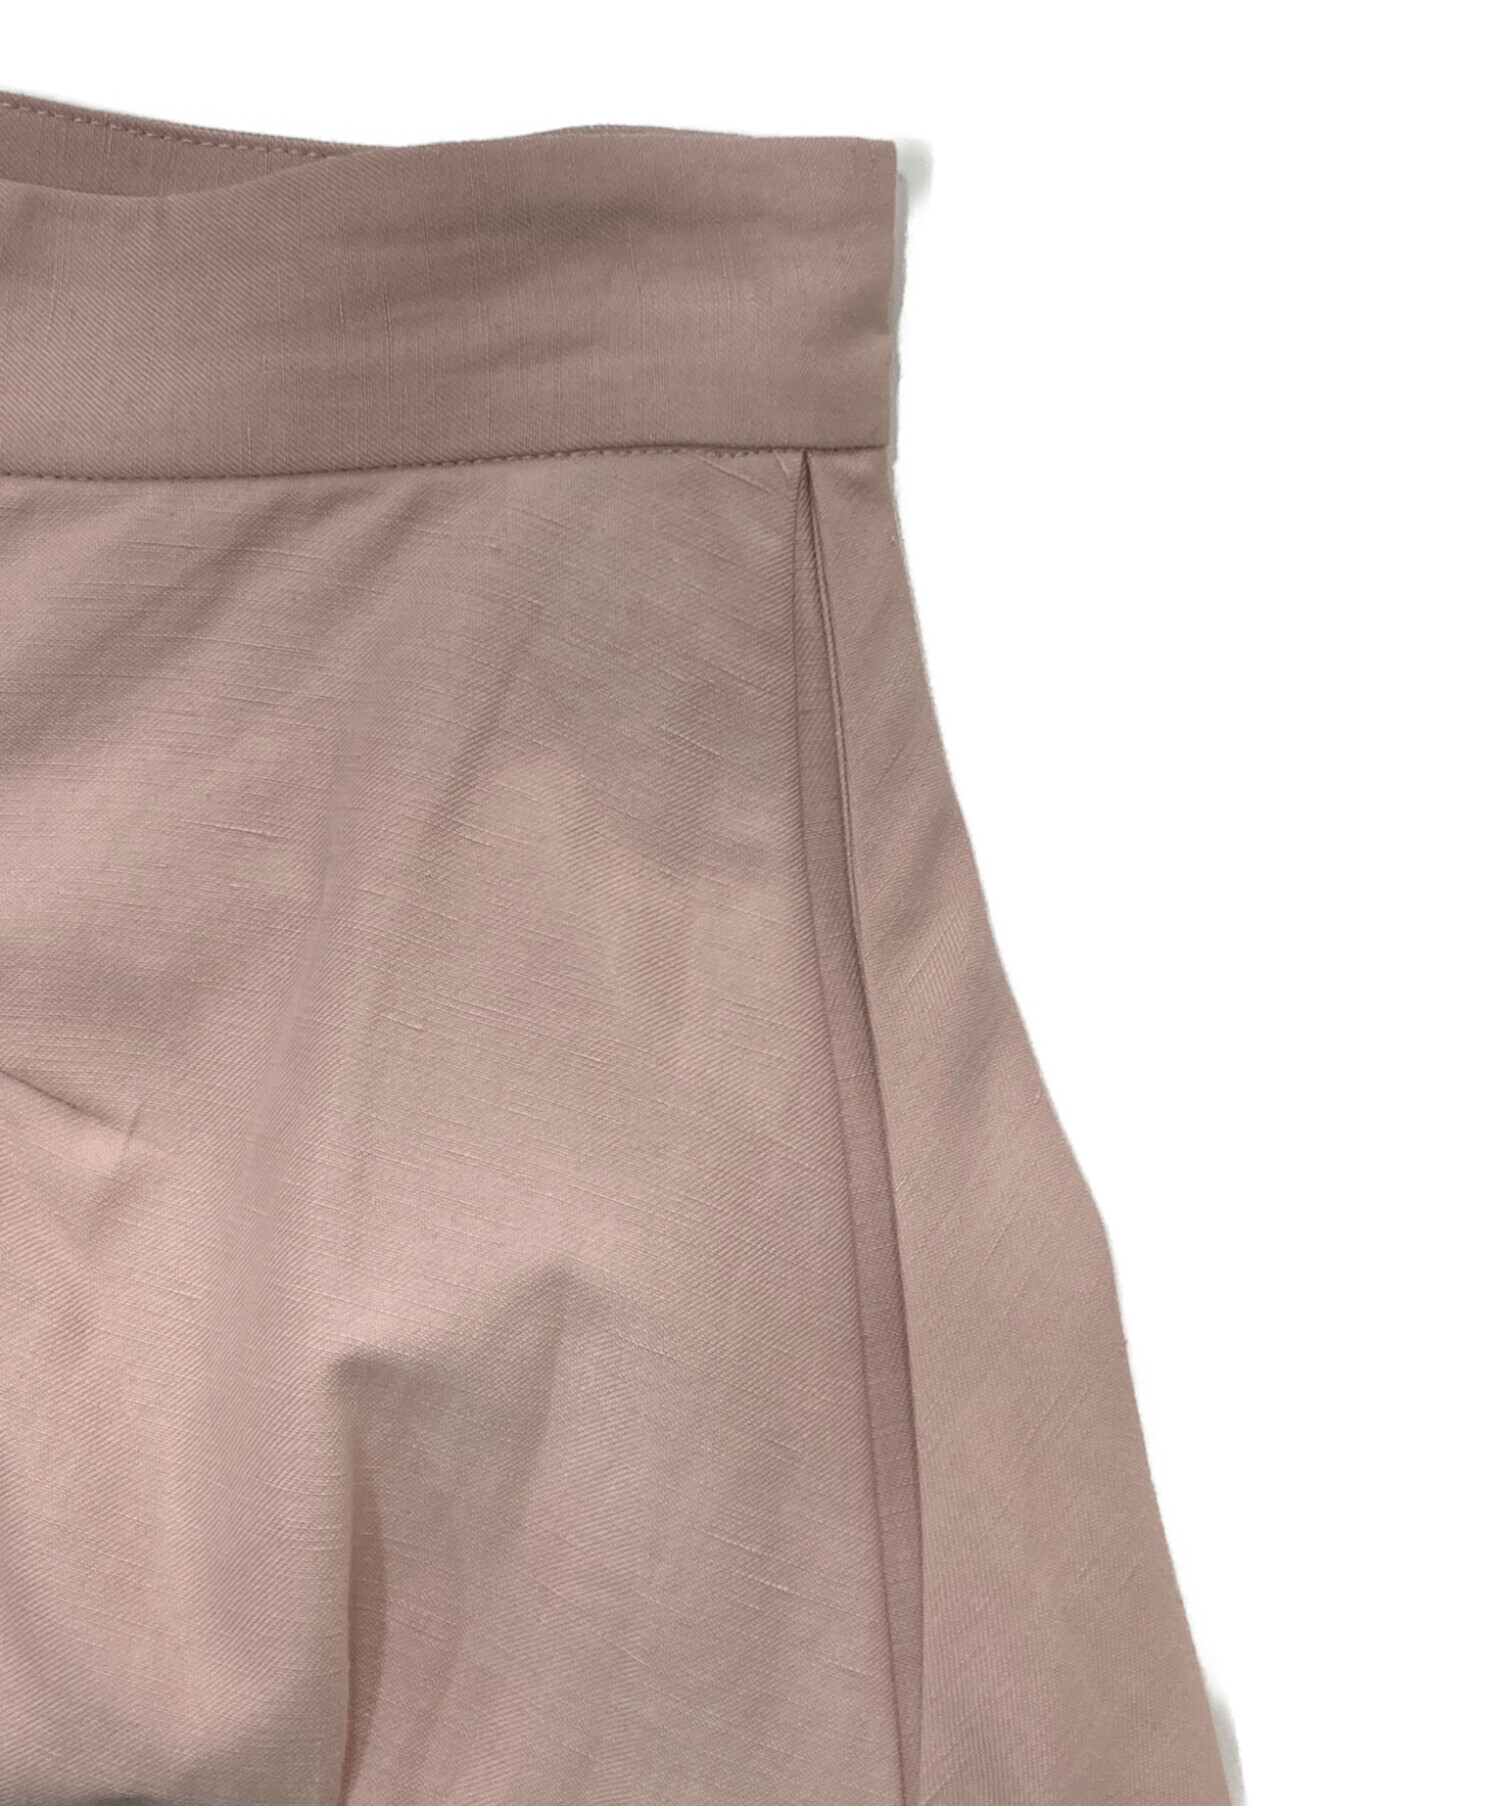 ebure (エブール) Linen Cotton Twill Flare Skirt ピンク サイズ:36